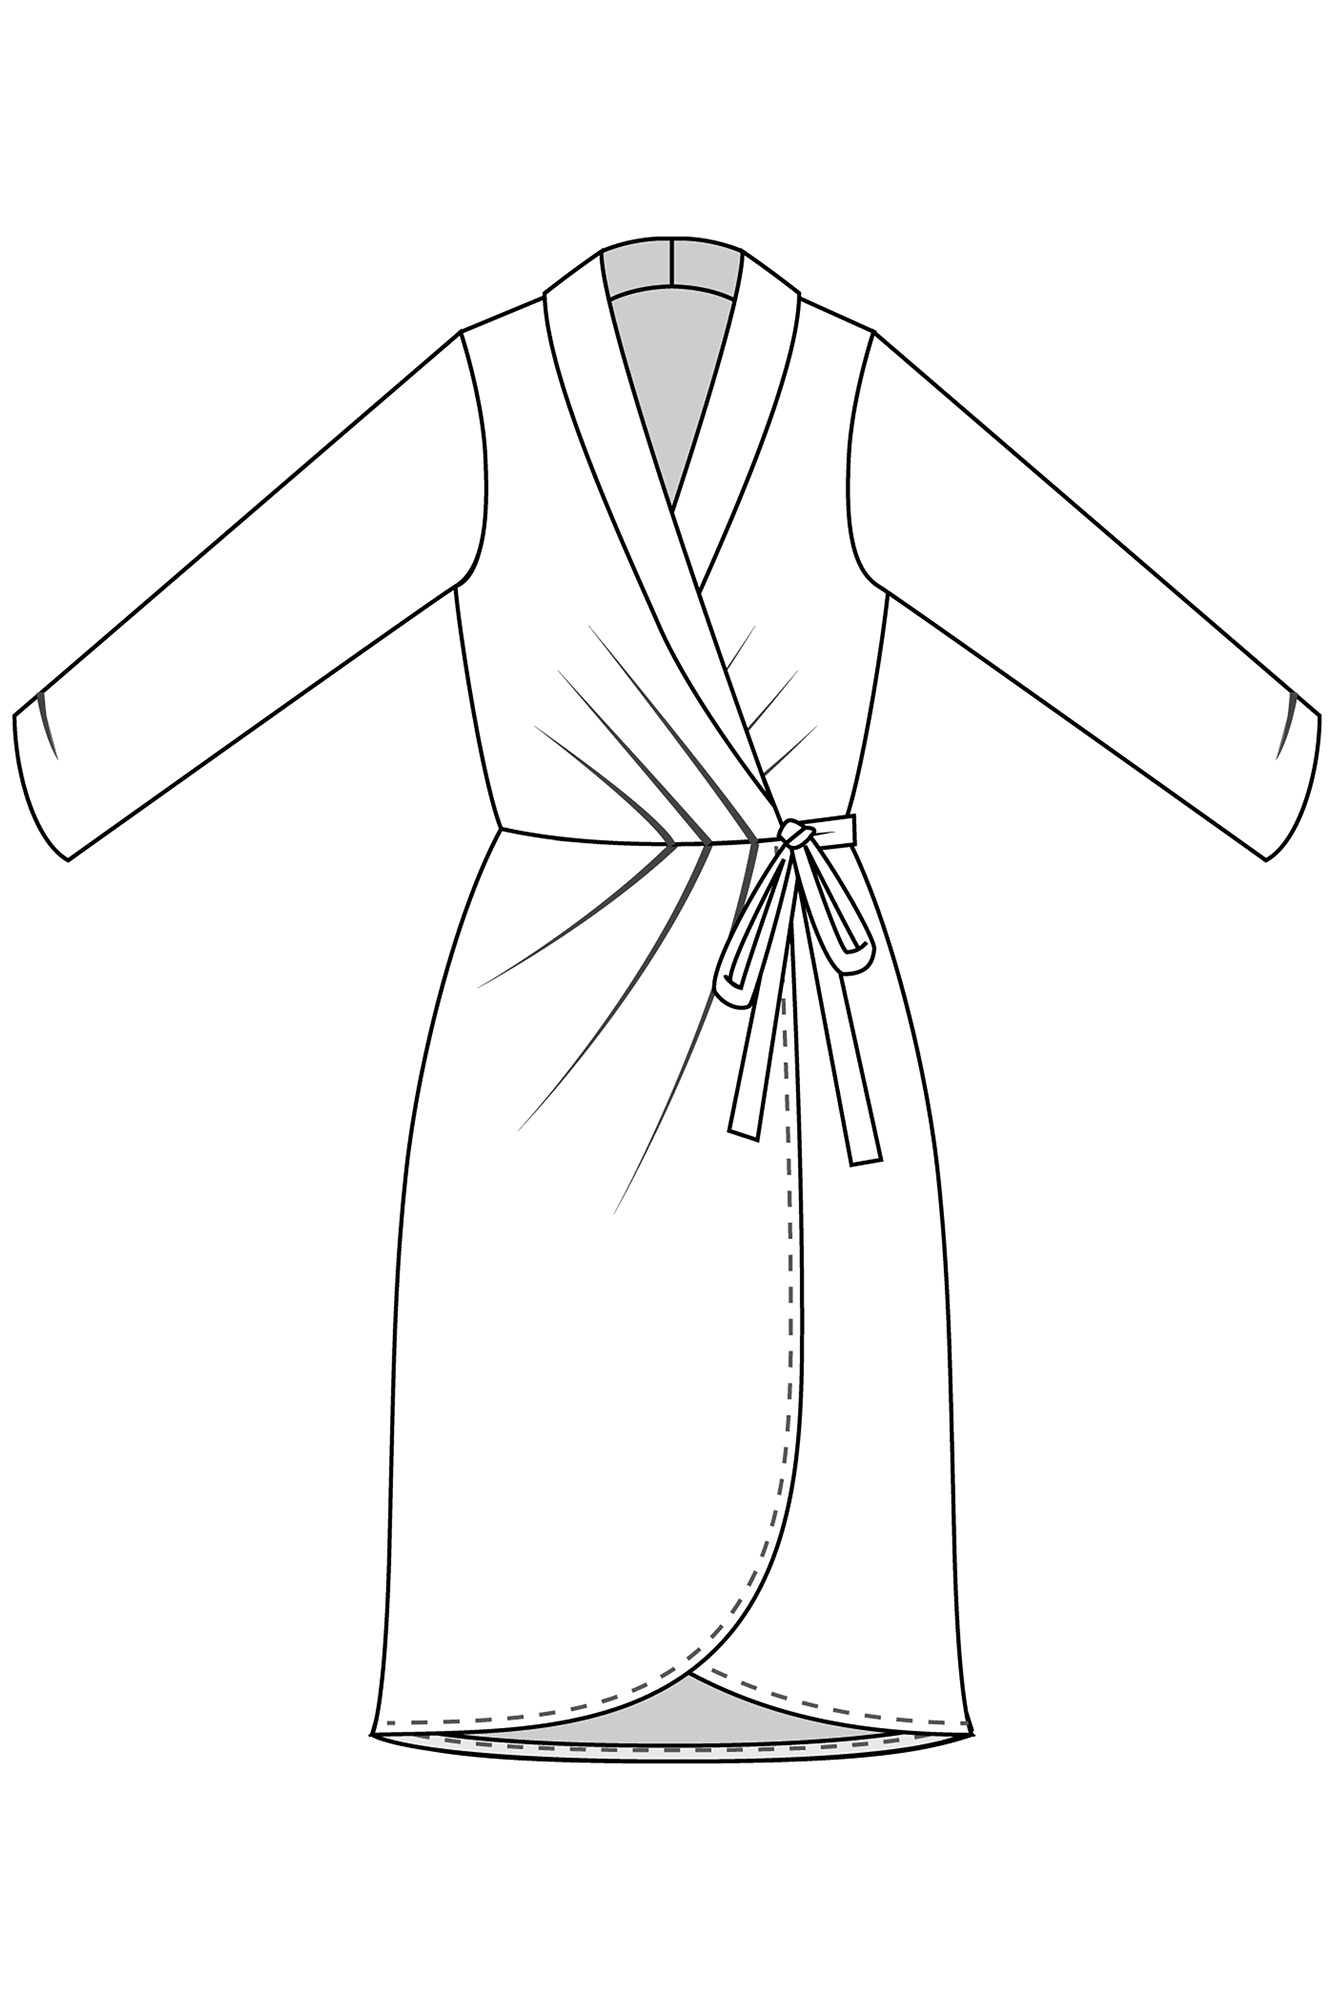 Melanie's Wrap Dress & Top PDF Pattern